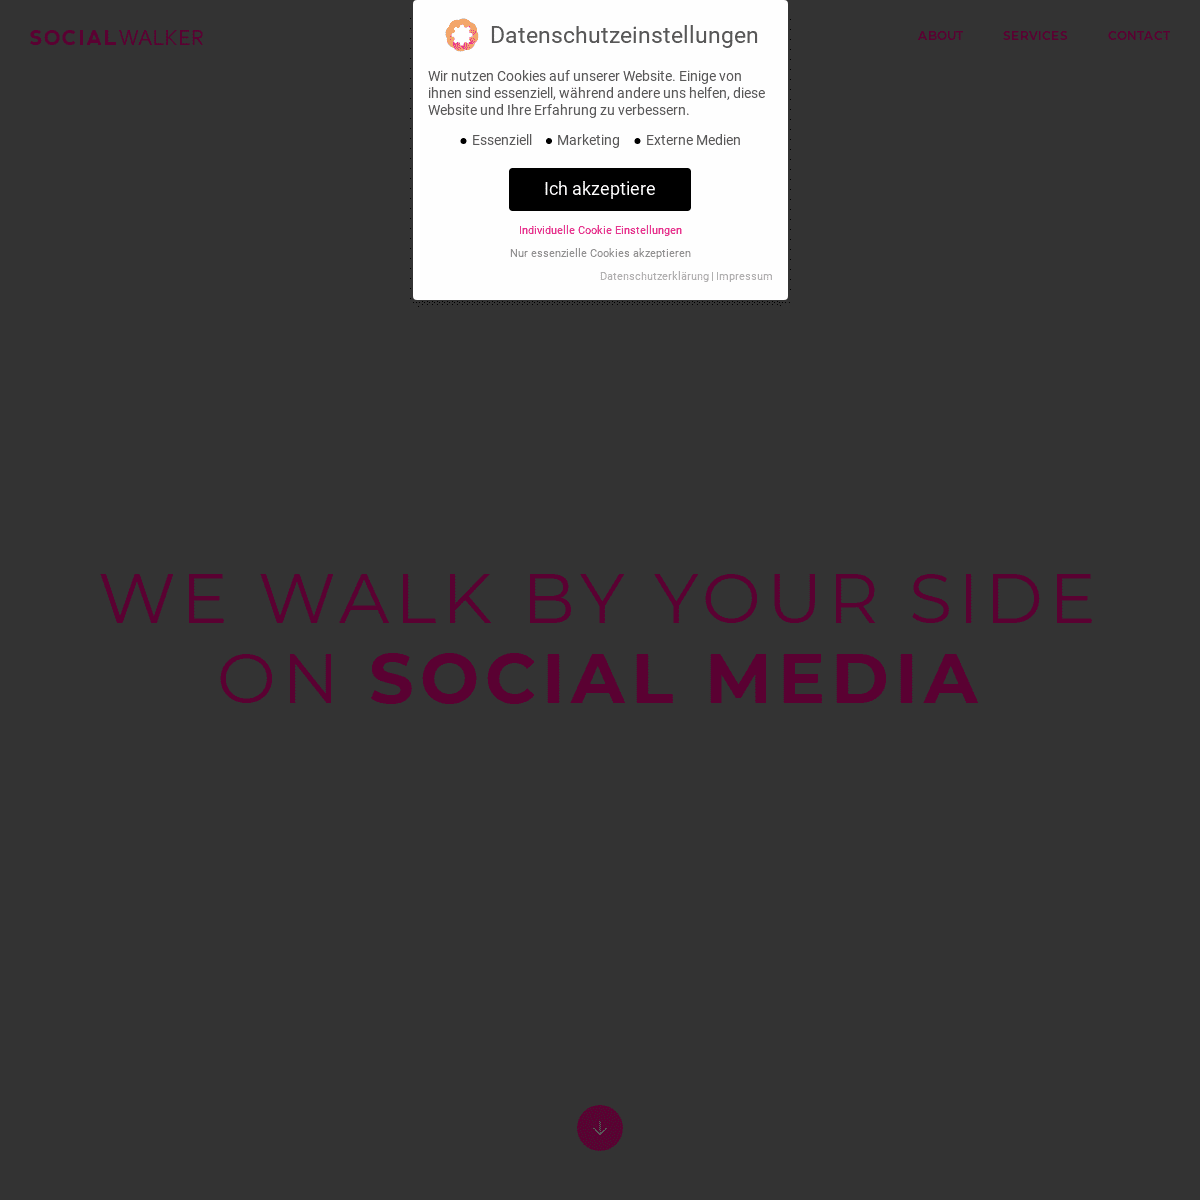 A complete backup of social-walker.com